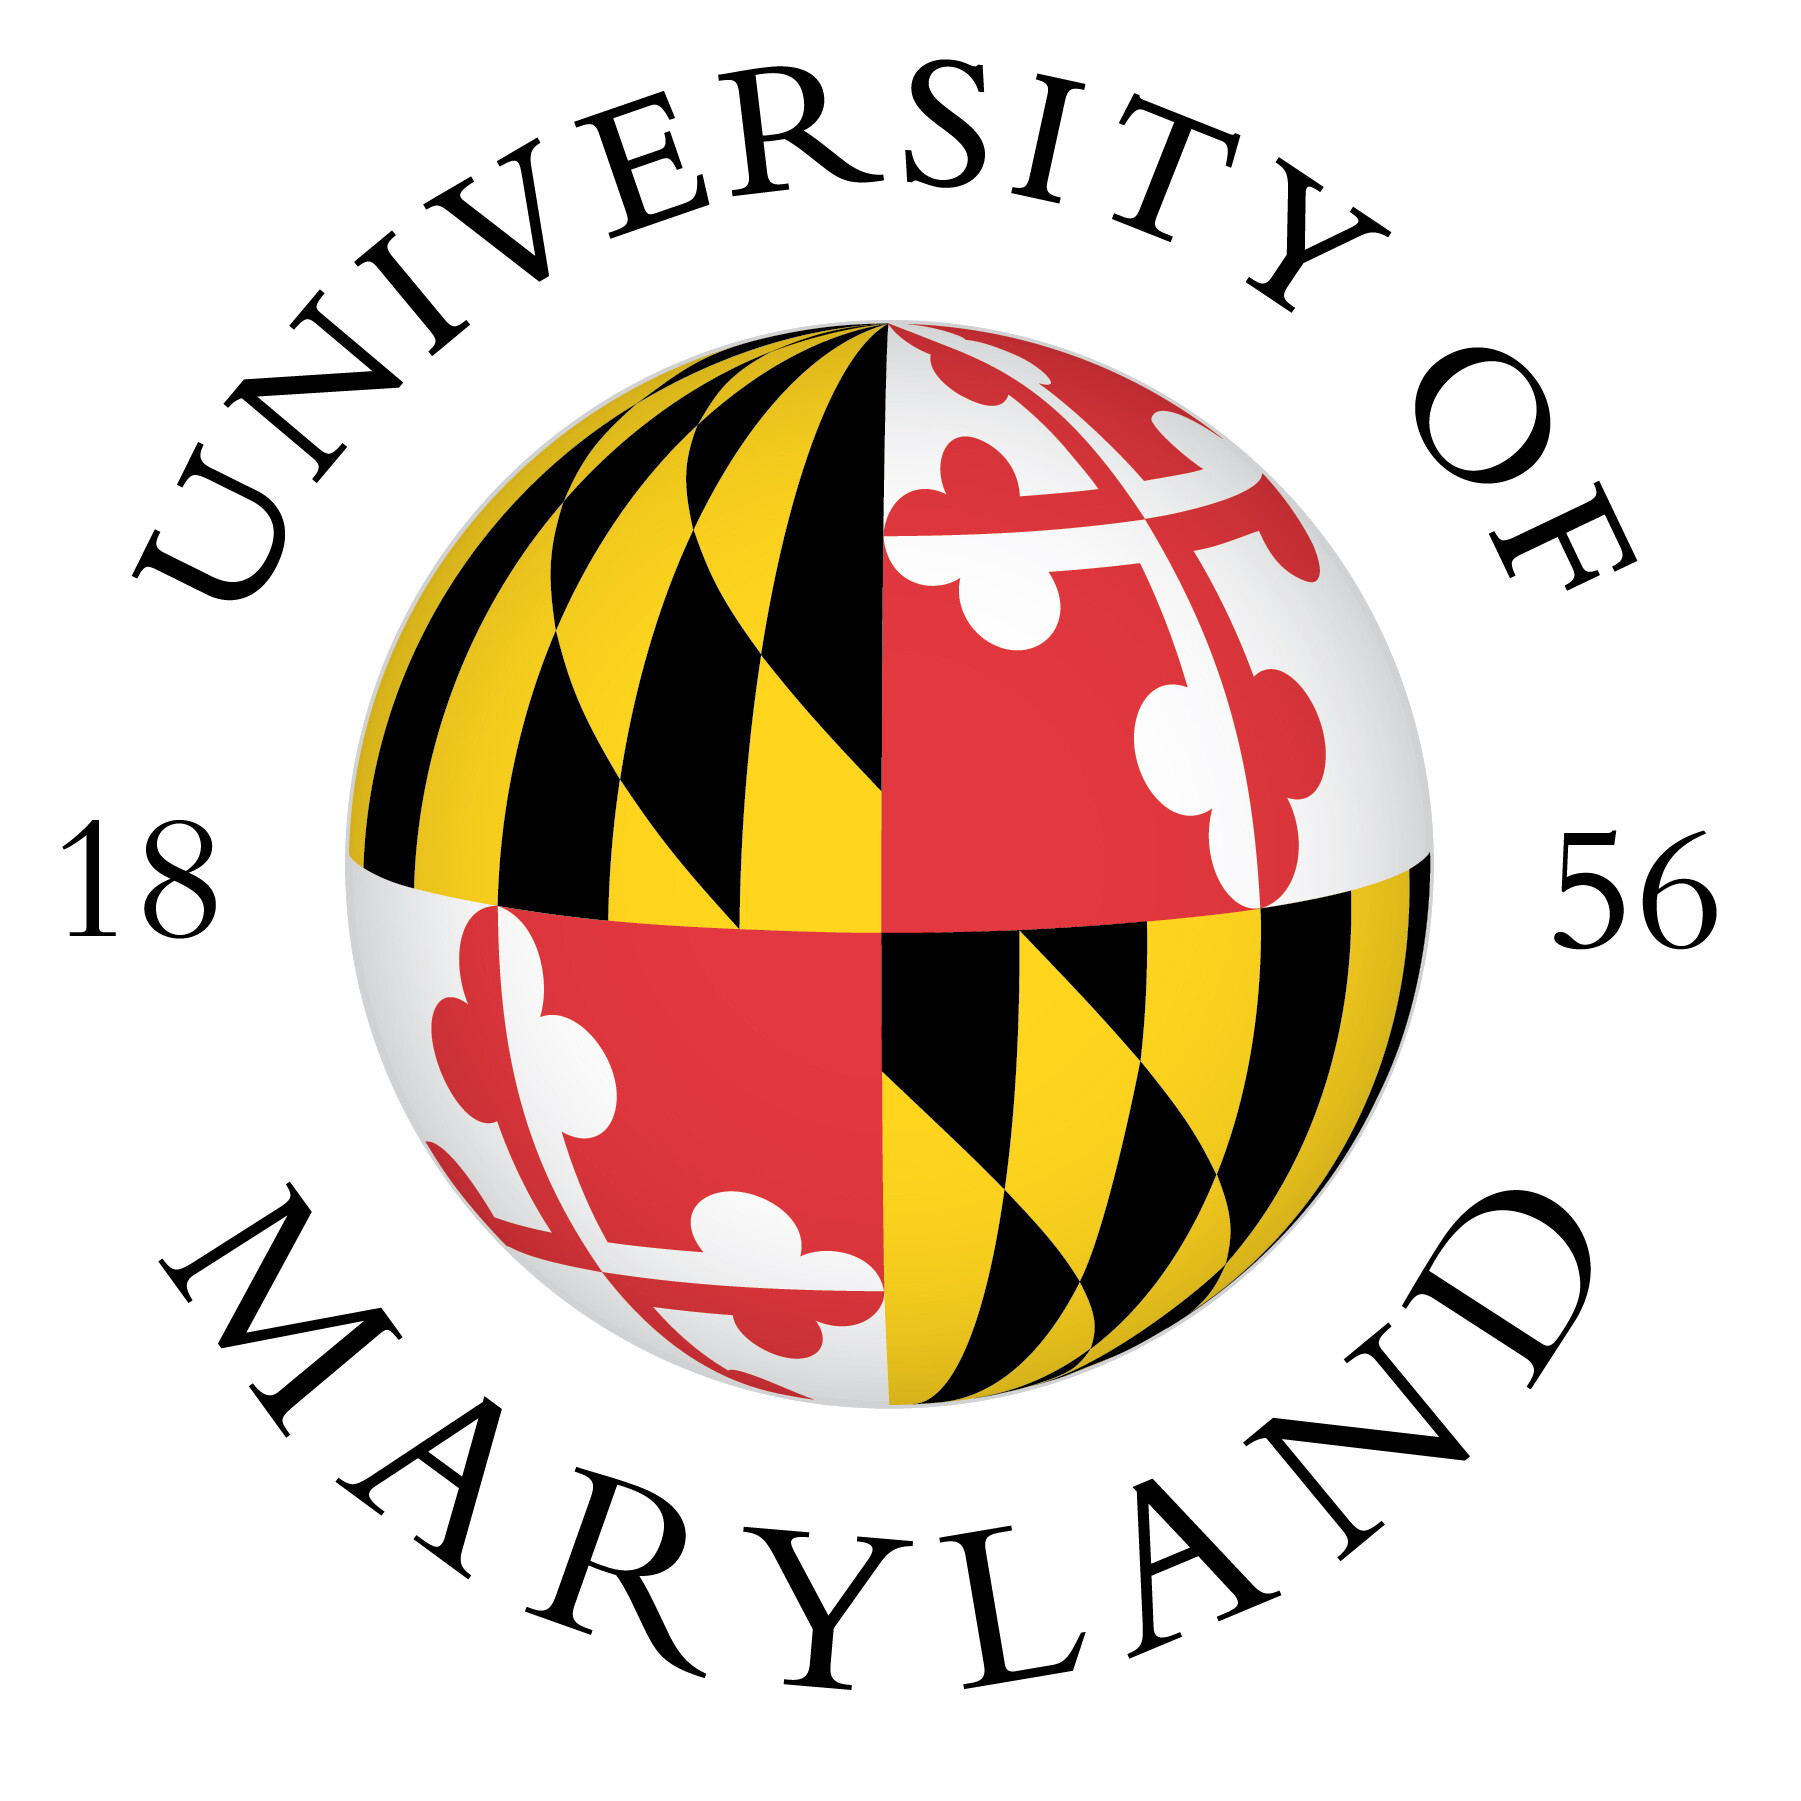 Logo of University of Maryland.